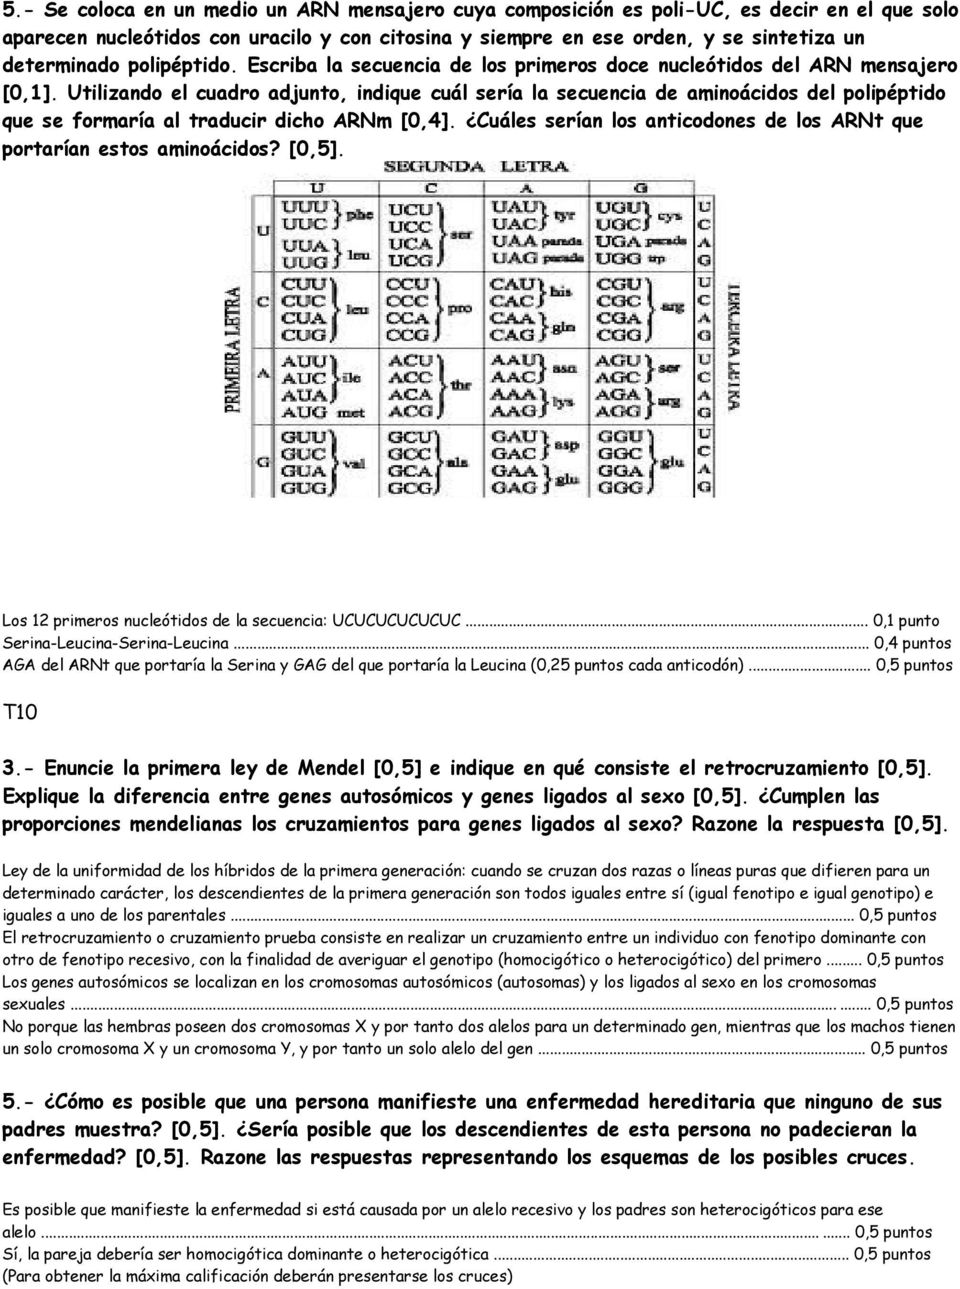 Utilizando el cuadro adjunto, indique cuál sería la secuencia de aminoácidos del polipéptido que se formaría al traducir dicho ARNm [0,4].